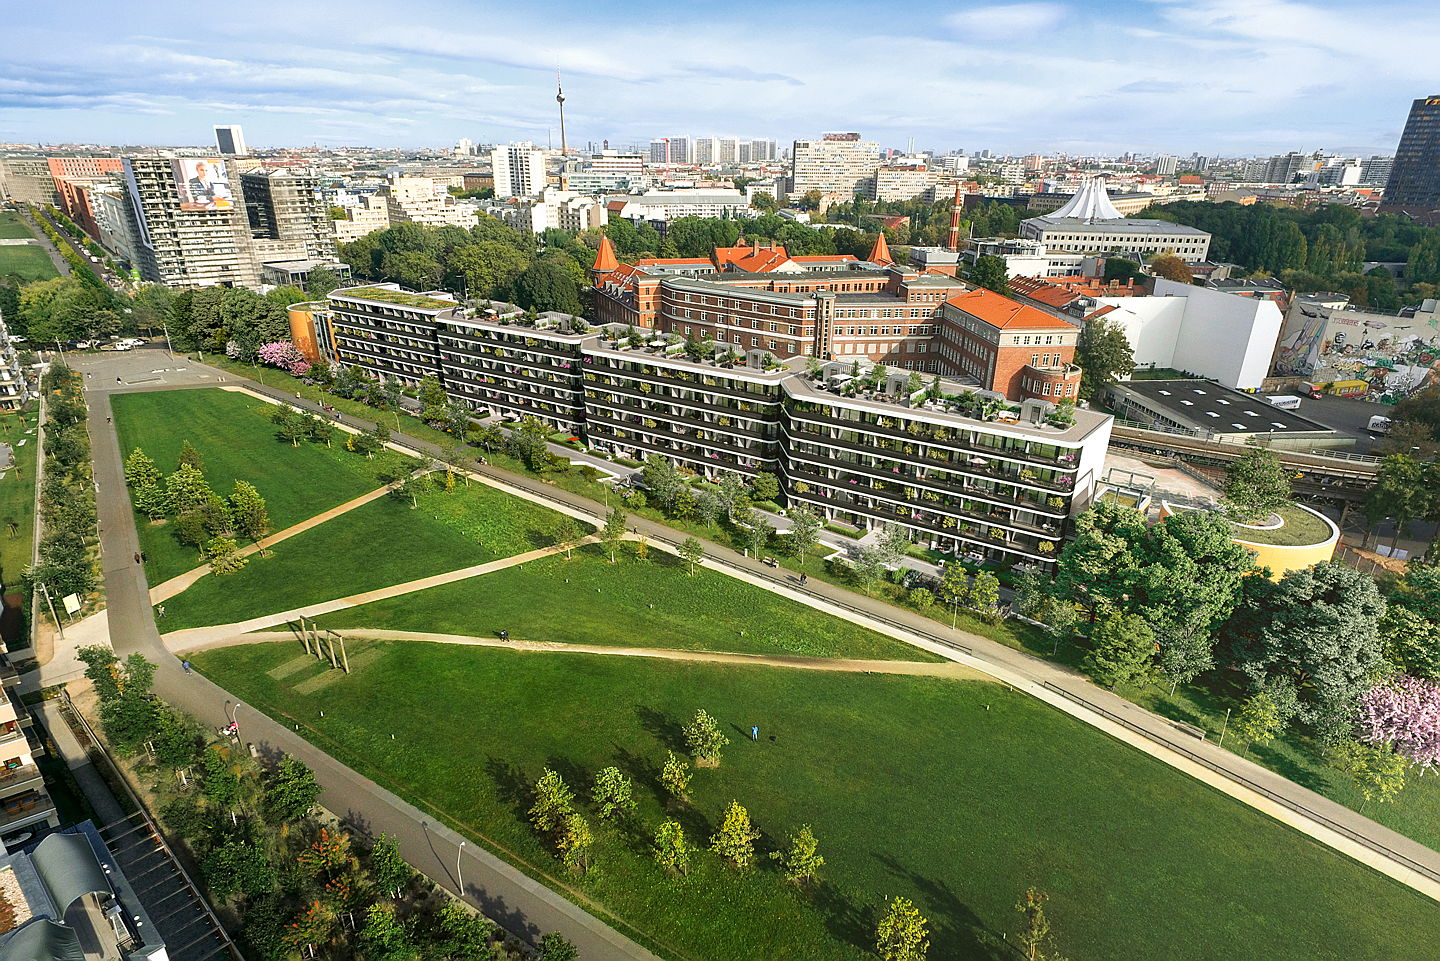  Berlin
- GLEIS PARK BERLIN